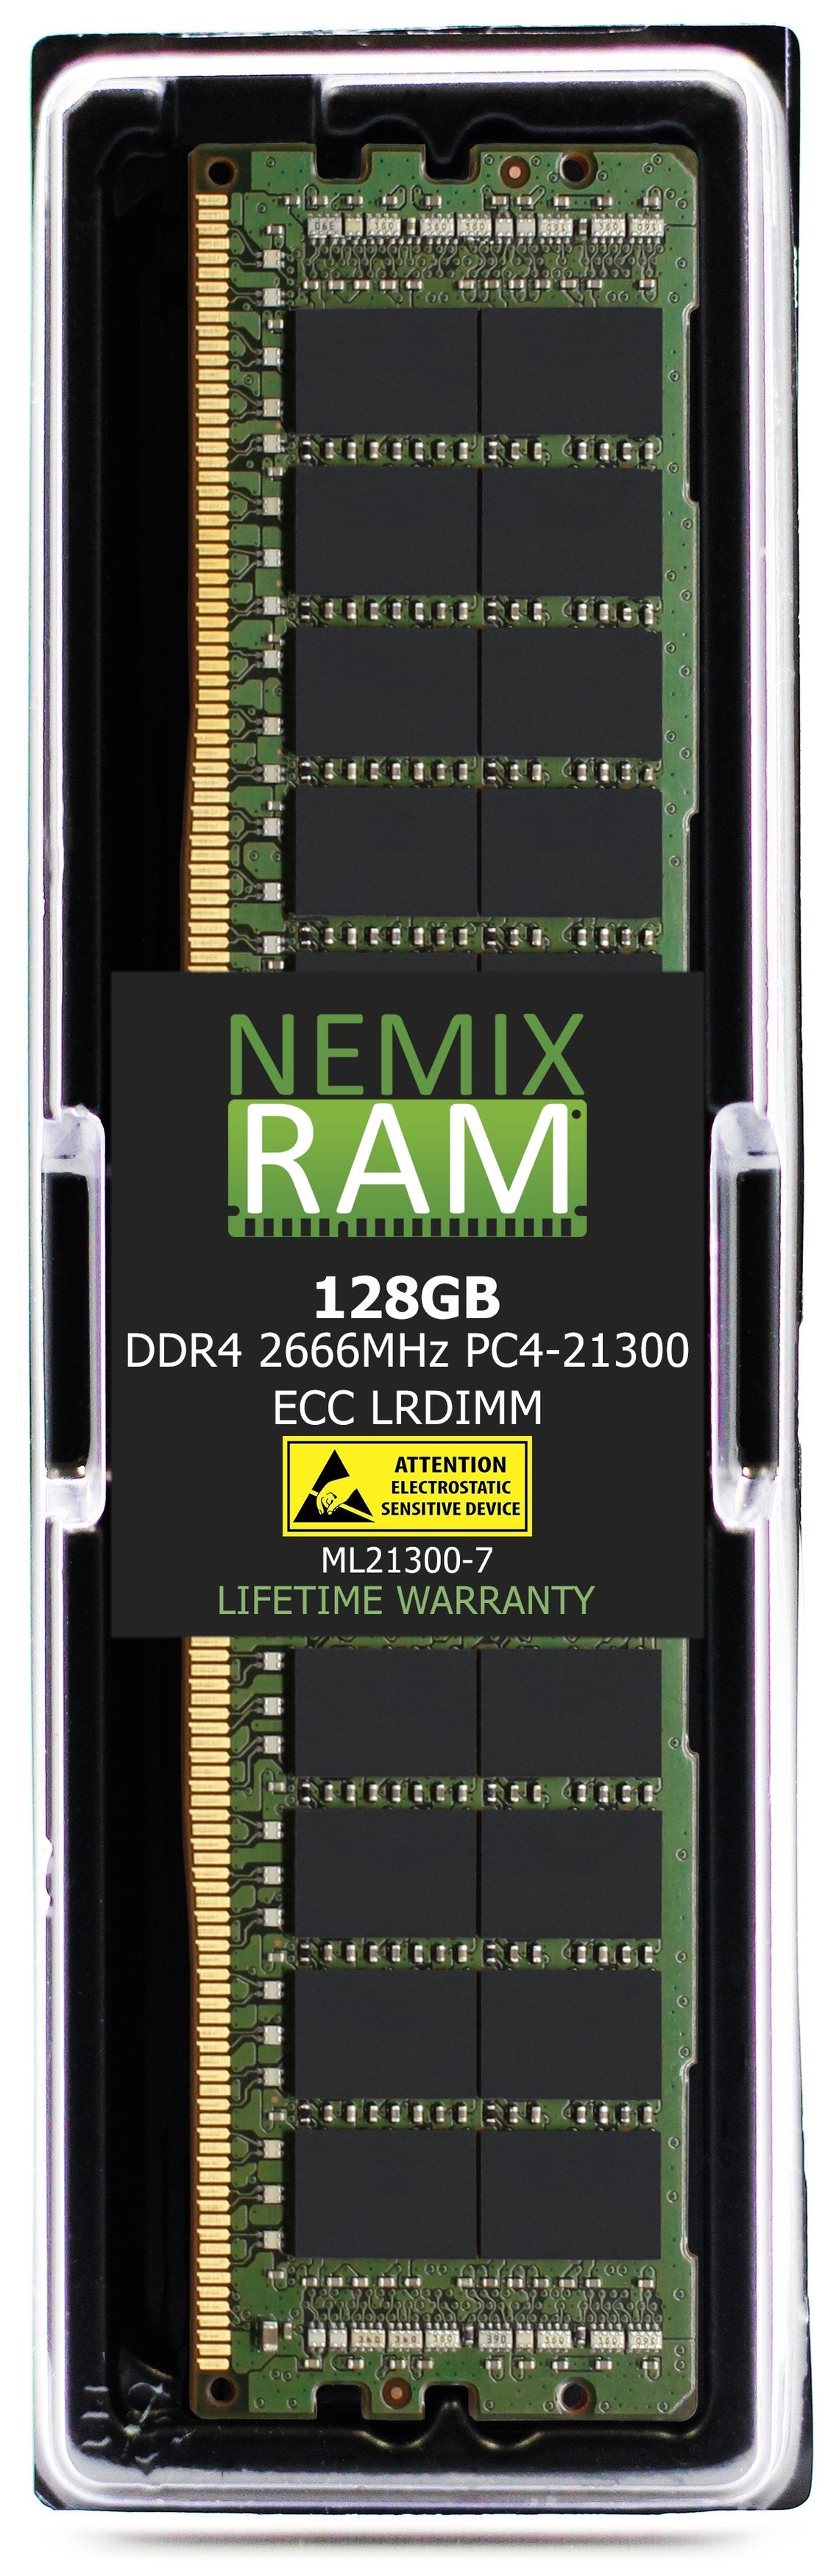 Hynix HMABAGL7A4R4N-VN 128GB DDR4 2666MHZ PC4-21300 LRDIMM Compatible Memory Module